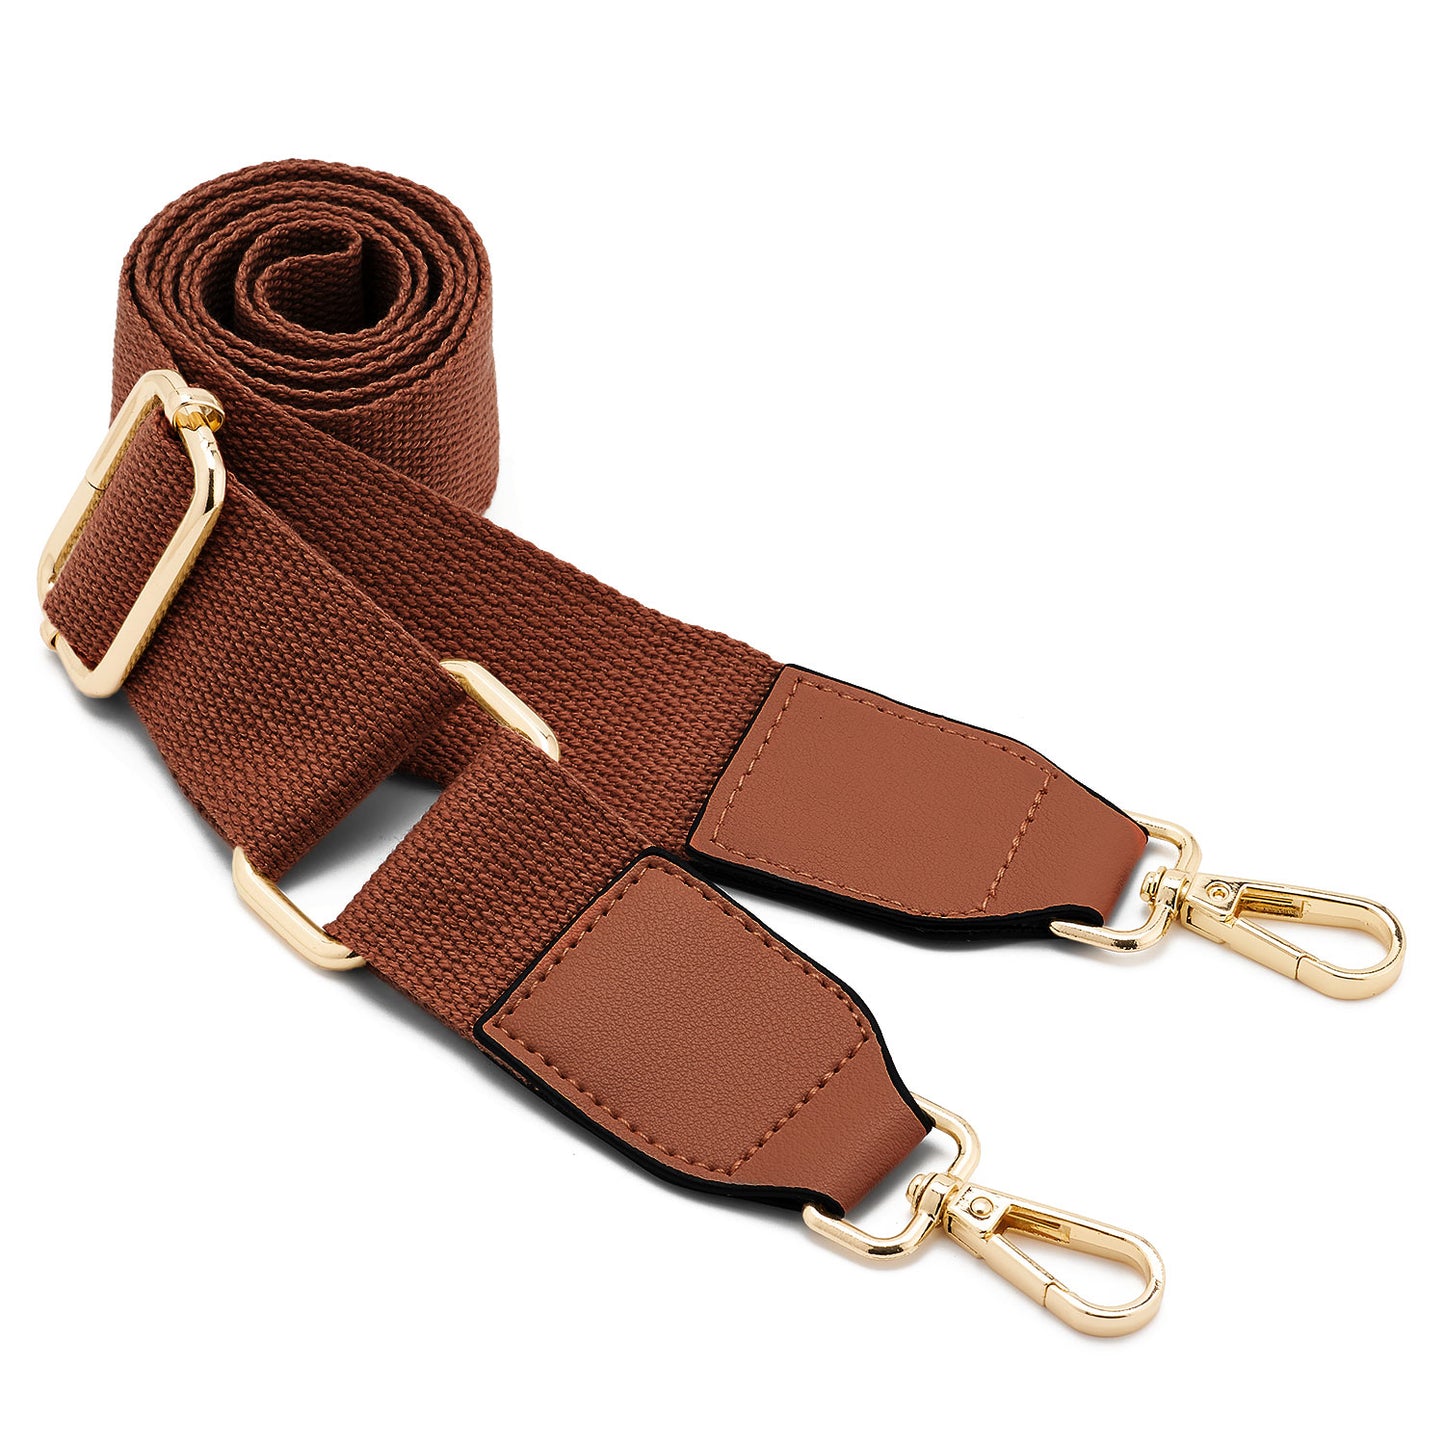 Multi Pochette Accessories Replacement Strap Adjustable Crossbody Wide  Cavas Strap for Shoulder Bags Multi Purpose Strap (Brown)